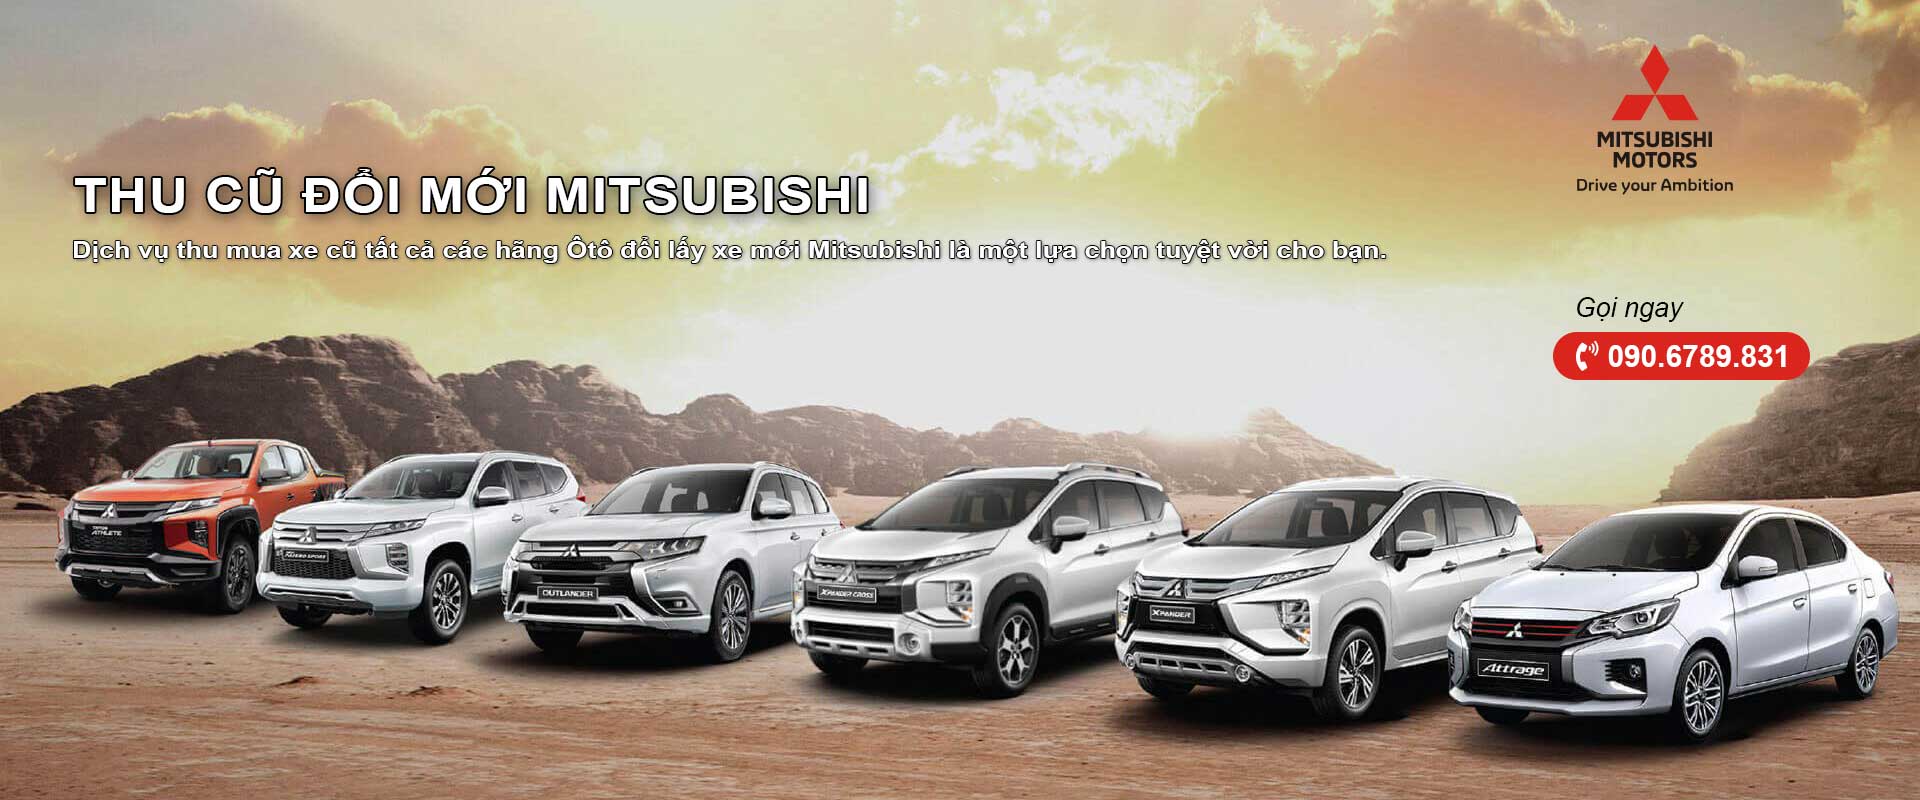 Slider - Thu cũ đổi mới Mitsubishi